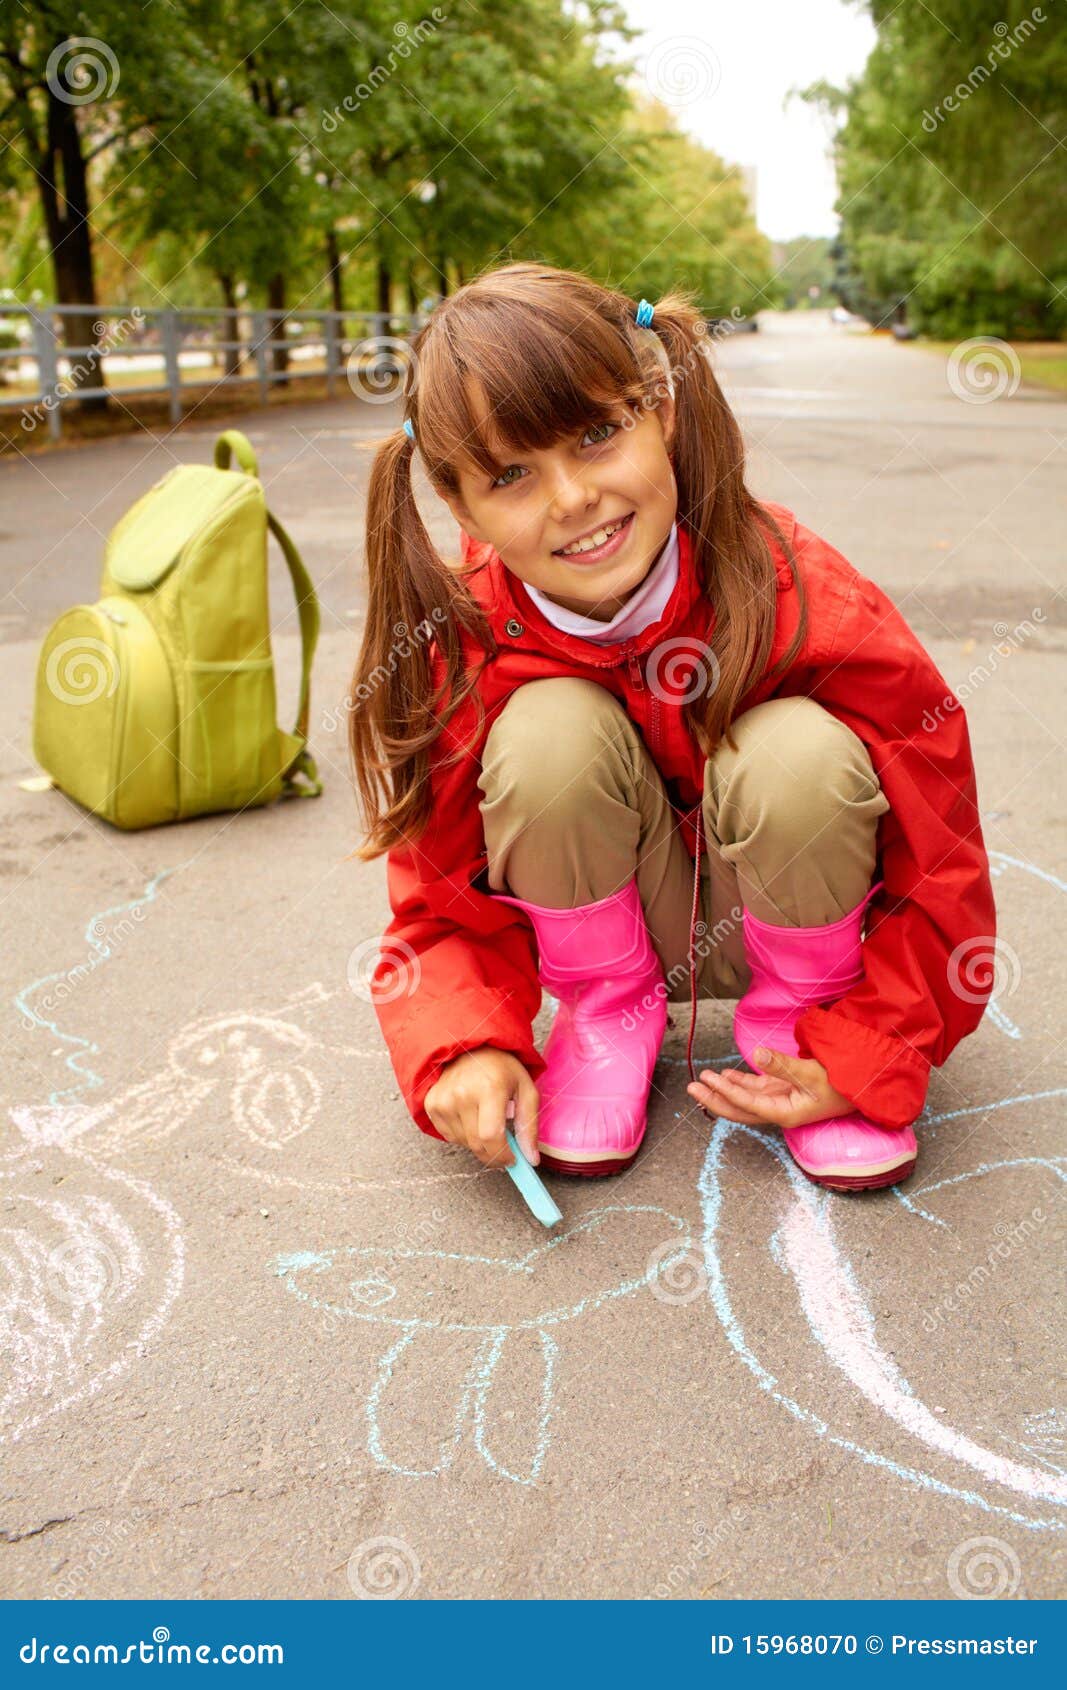 Пописать дома. Девочка с мелками. Маленькие девочки на детской площадке. Девочка присела. Подростки рисуют на асфальте.